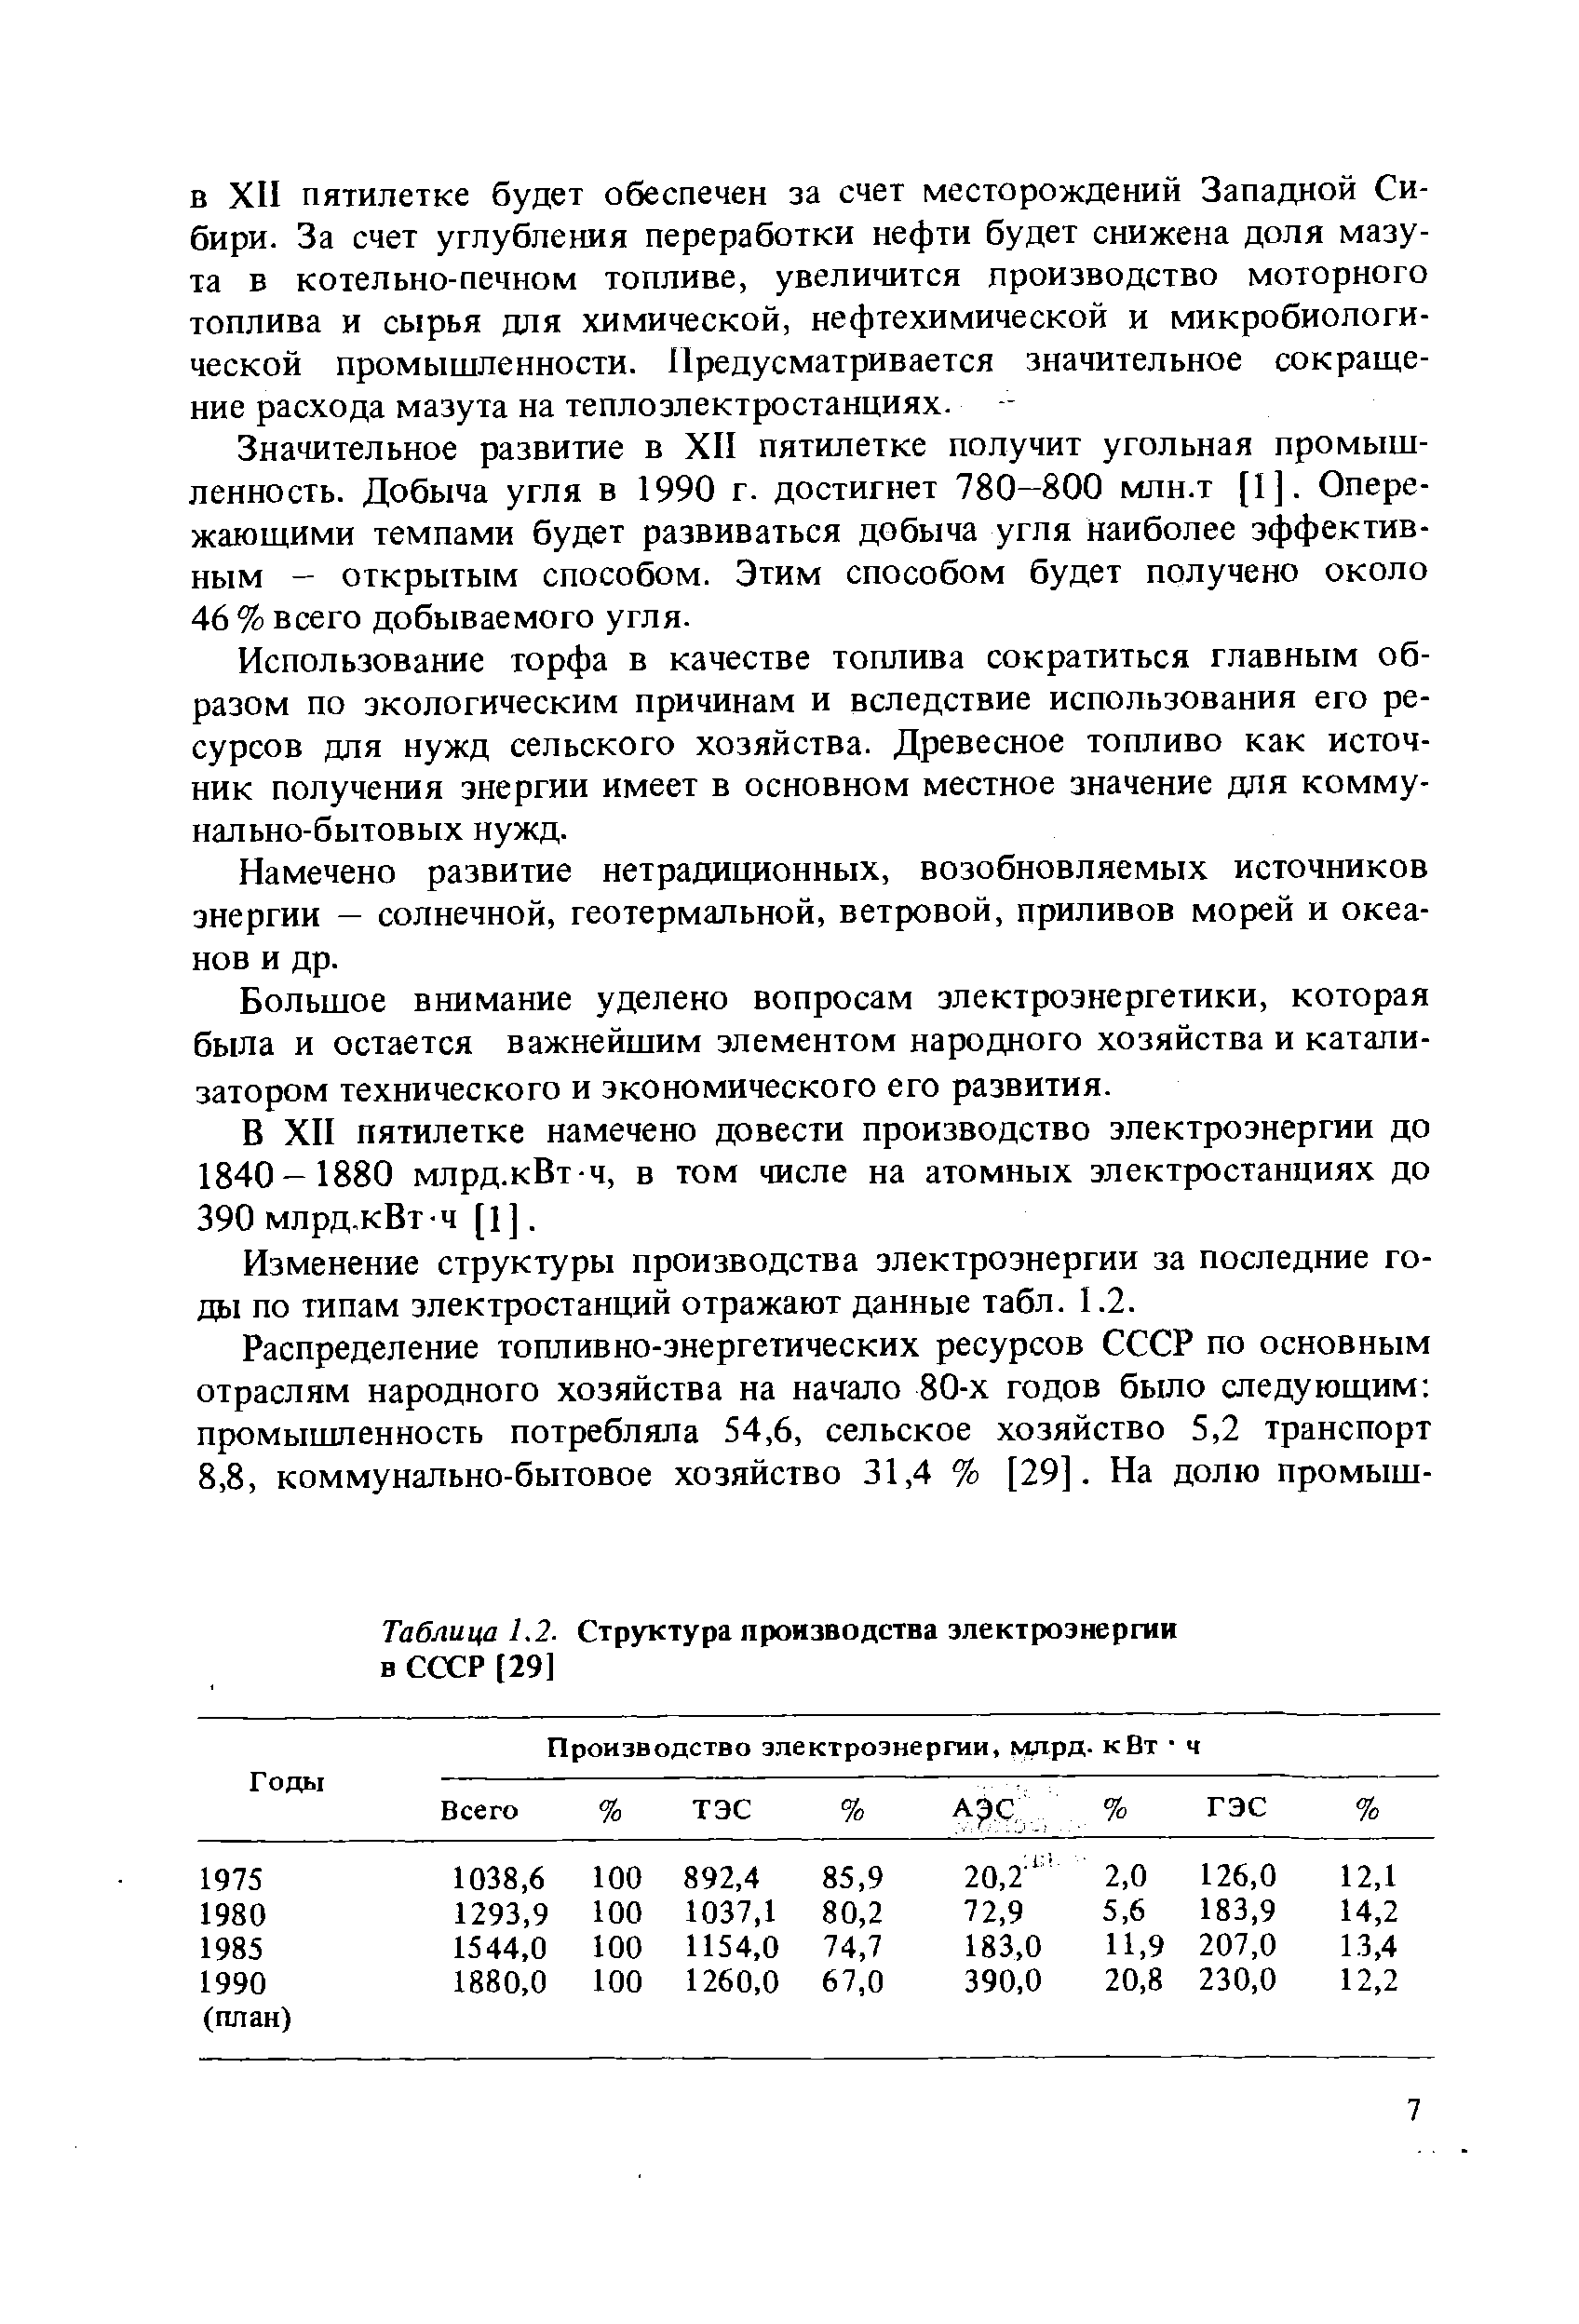 Таблица 1.2. Структура <a href="/info/345467">производства электроэнергии</a> в СССР [29]
